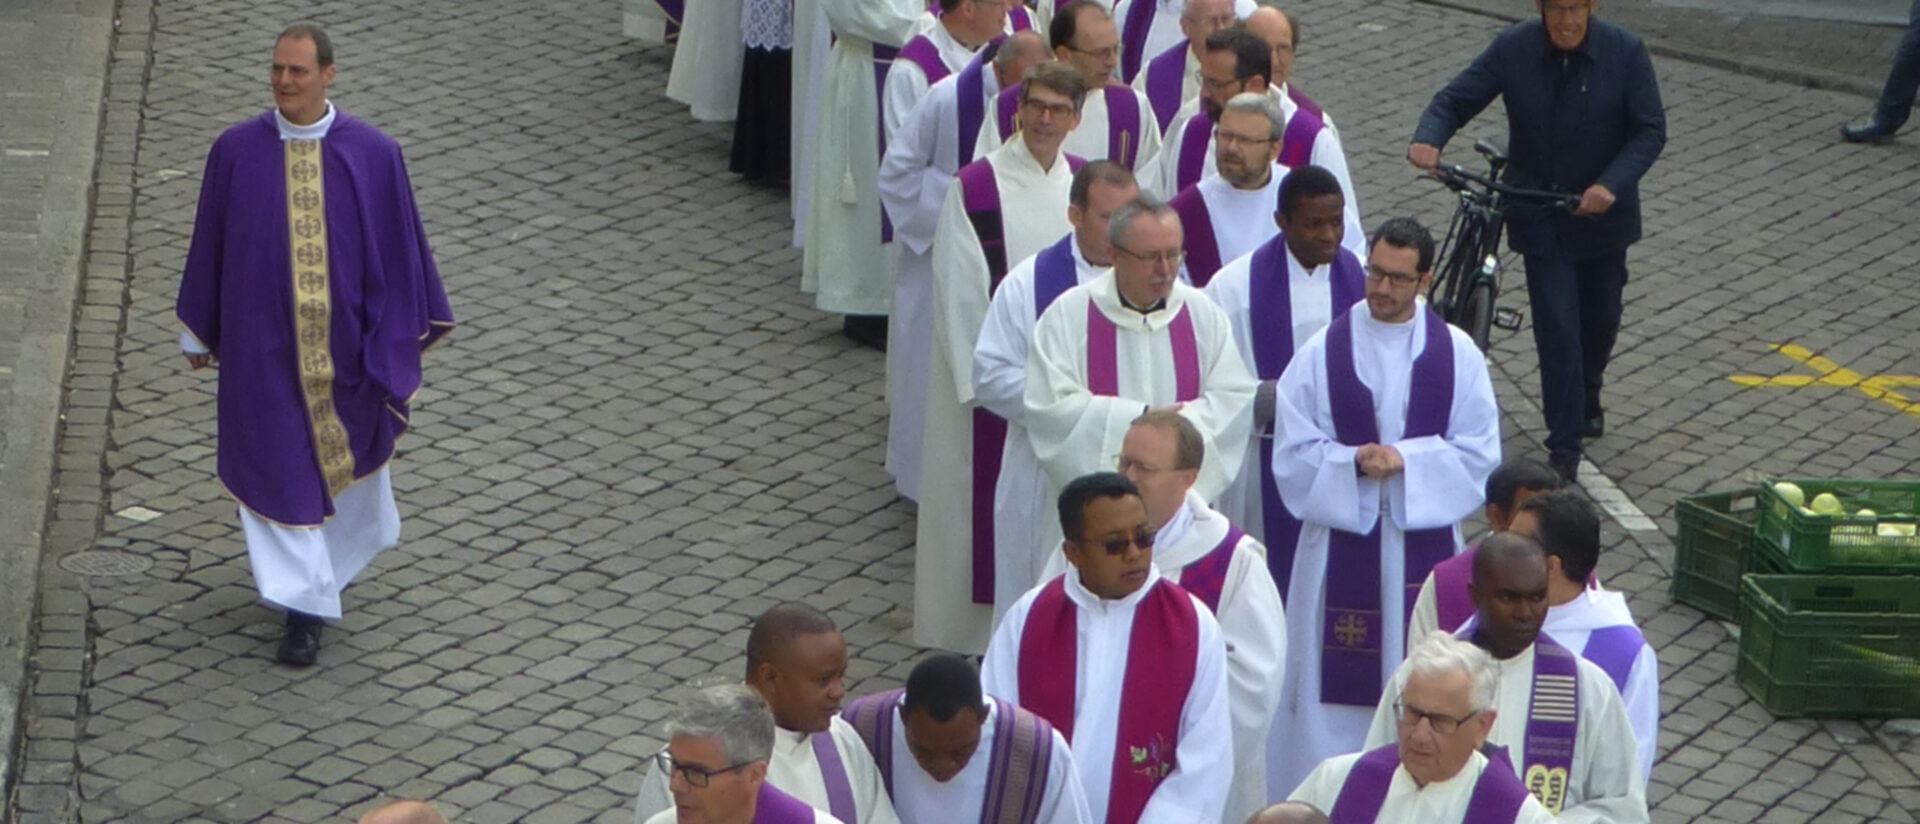 Martin Rohrer (ganz links) - hier bei der Priesterweihe in Schwyz am 6. April 2019.